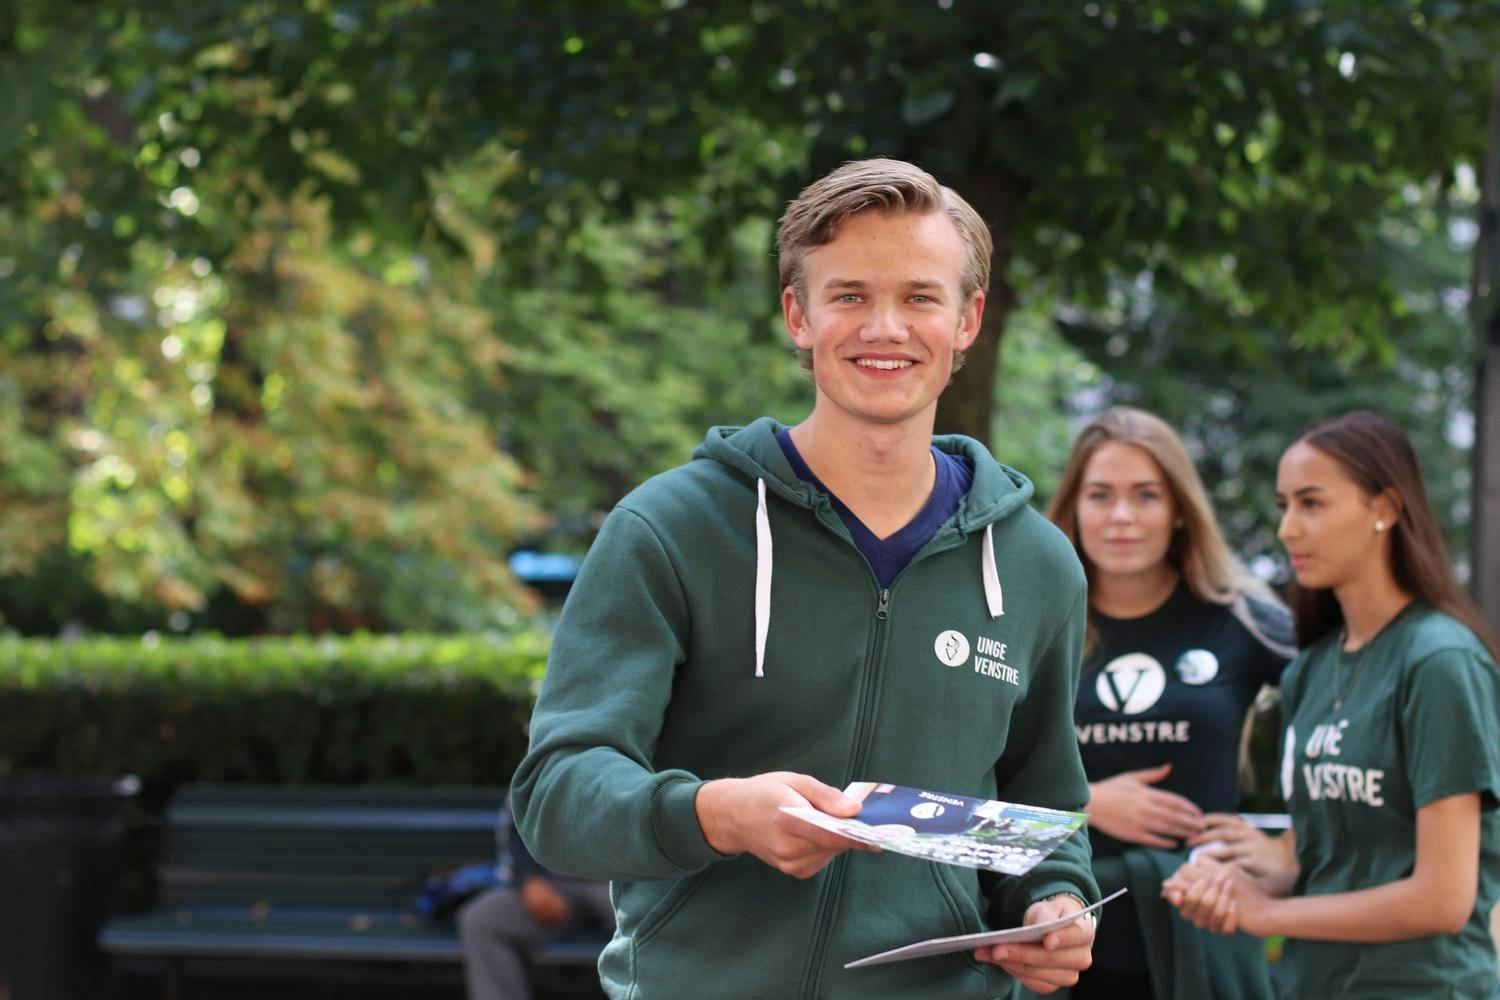 Unge Venstre deler ut brosjyrer under valgkampen. 